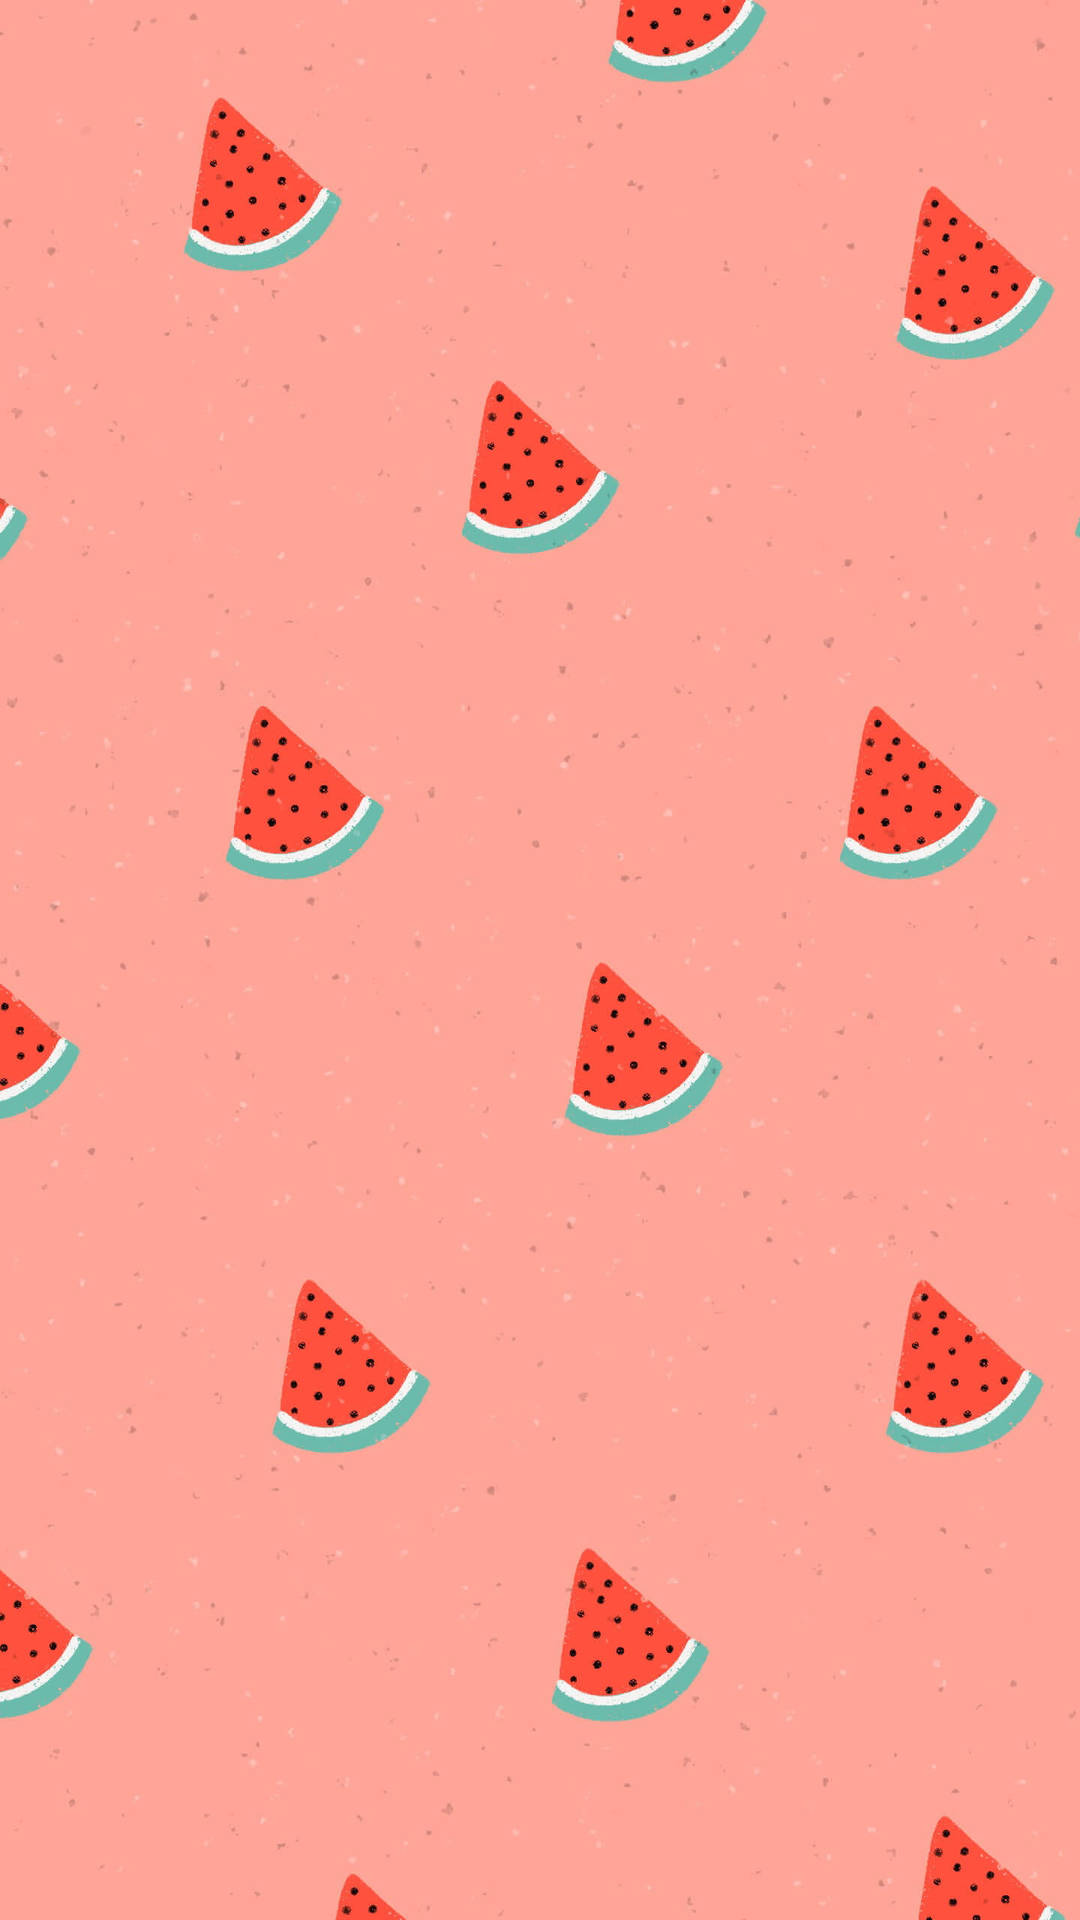 Bite Sized Cute Watermelon Pattern Art